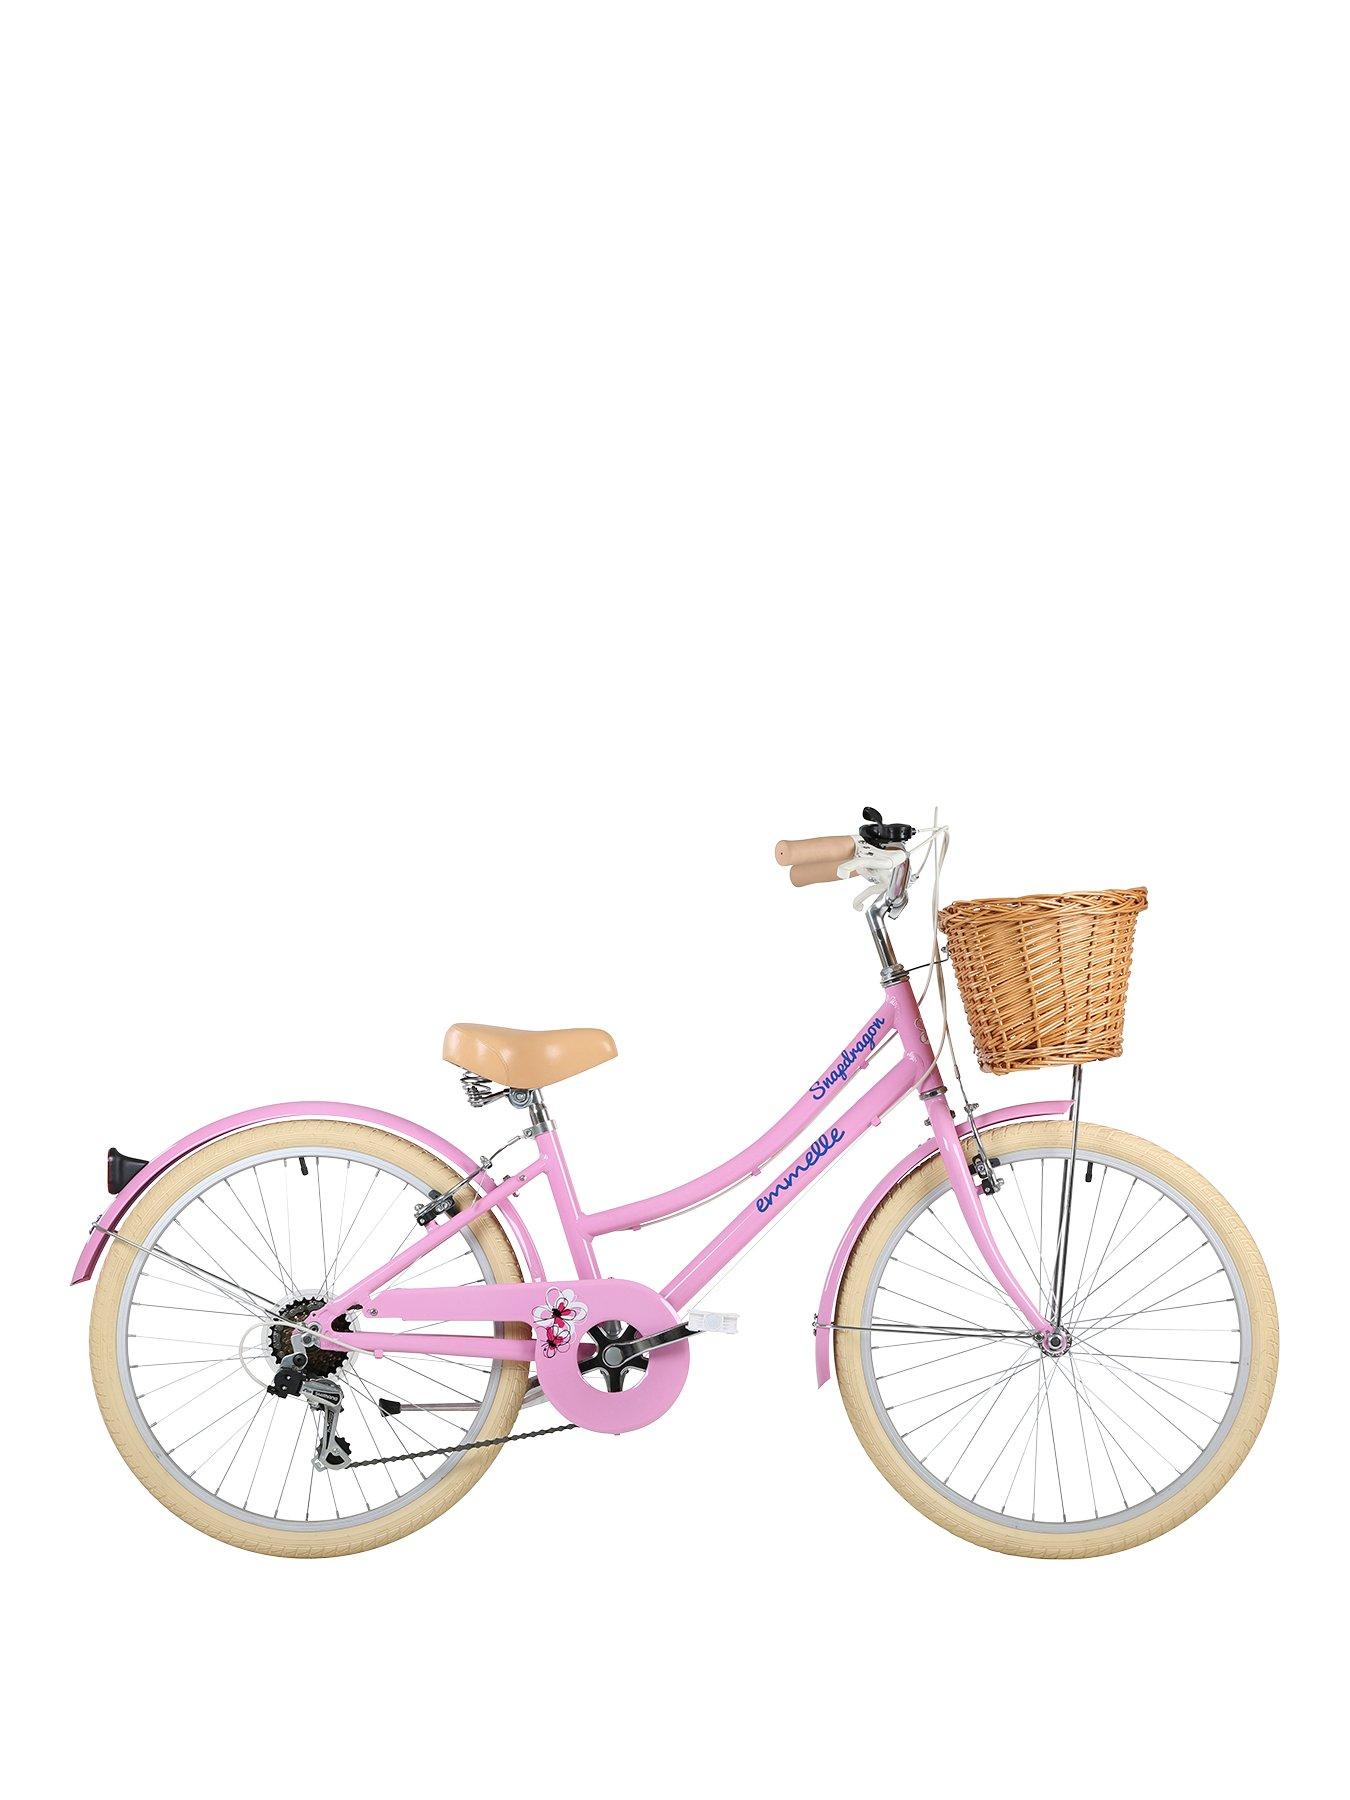 50.8 cm Heritage Snapdragon Bike in Pink Girls Bike Emmelle 20" 